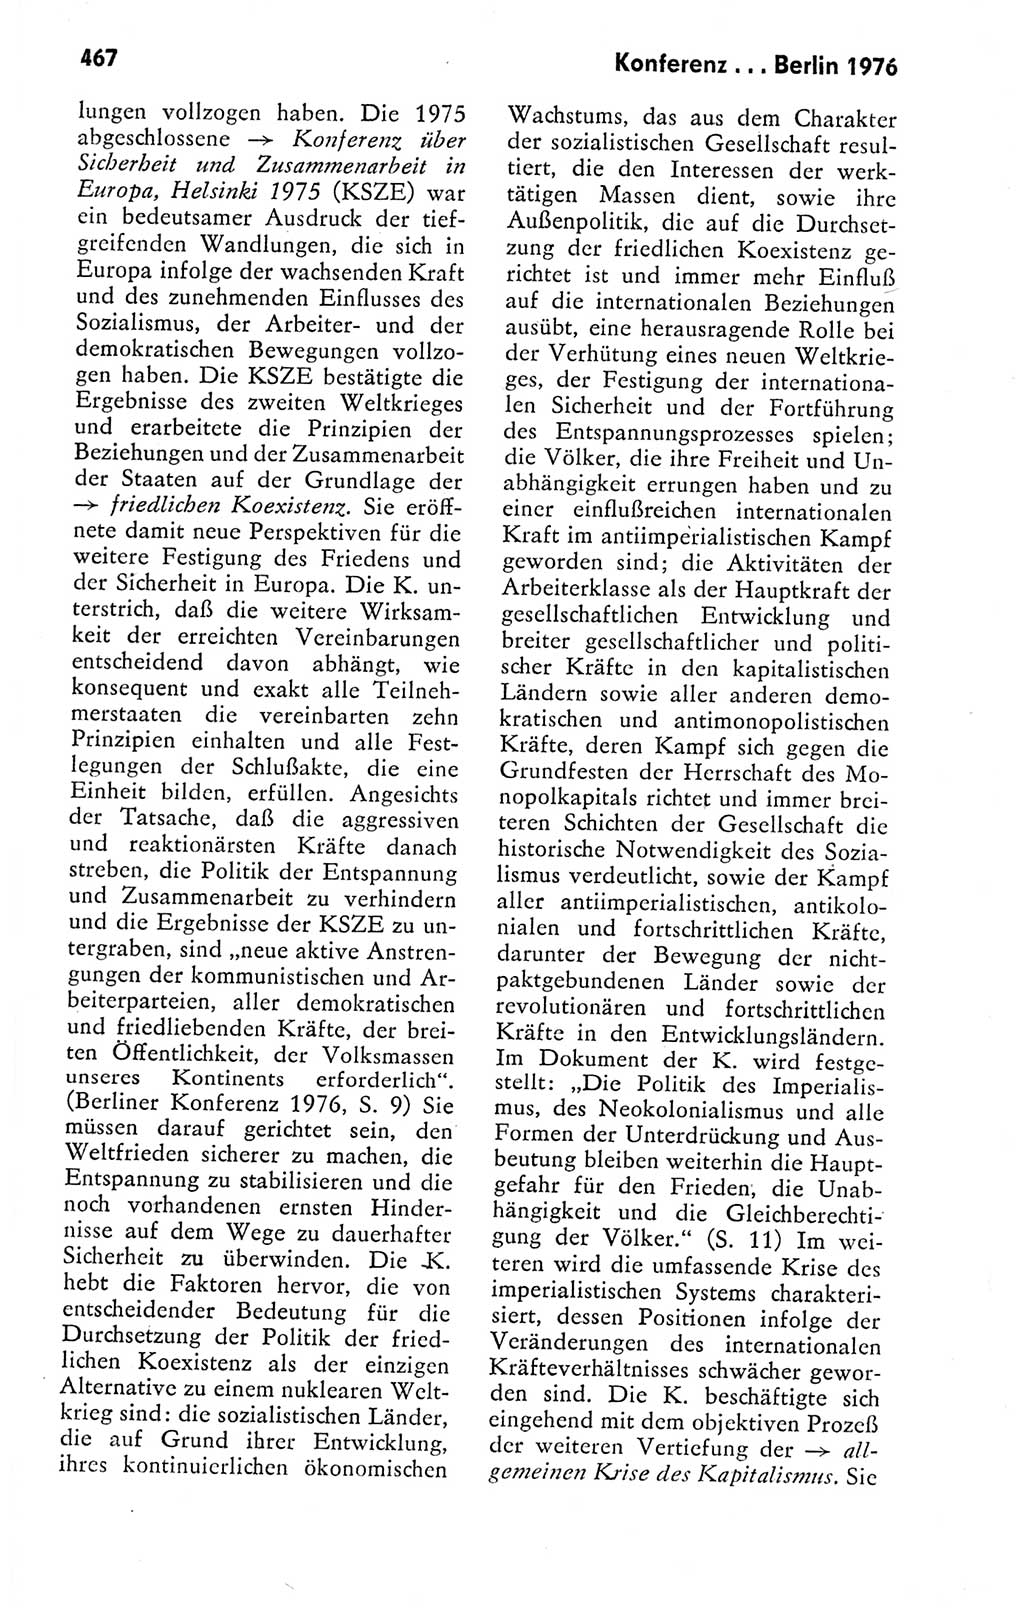 Kleines politisches Wörterbuch [Deutsche Demokratische Republik (DDR)] 1978, Seite 467 (Kl. pol. Wb. DDR 1978, S. 467)